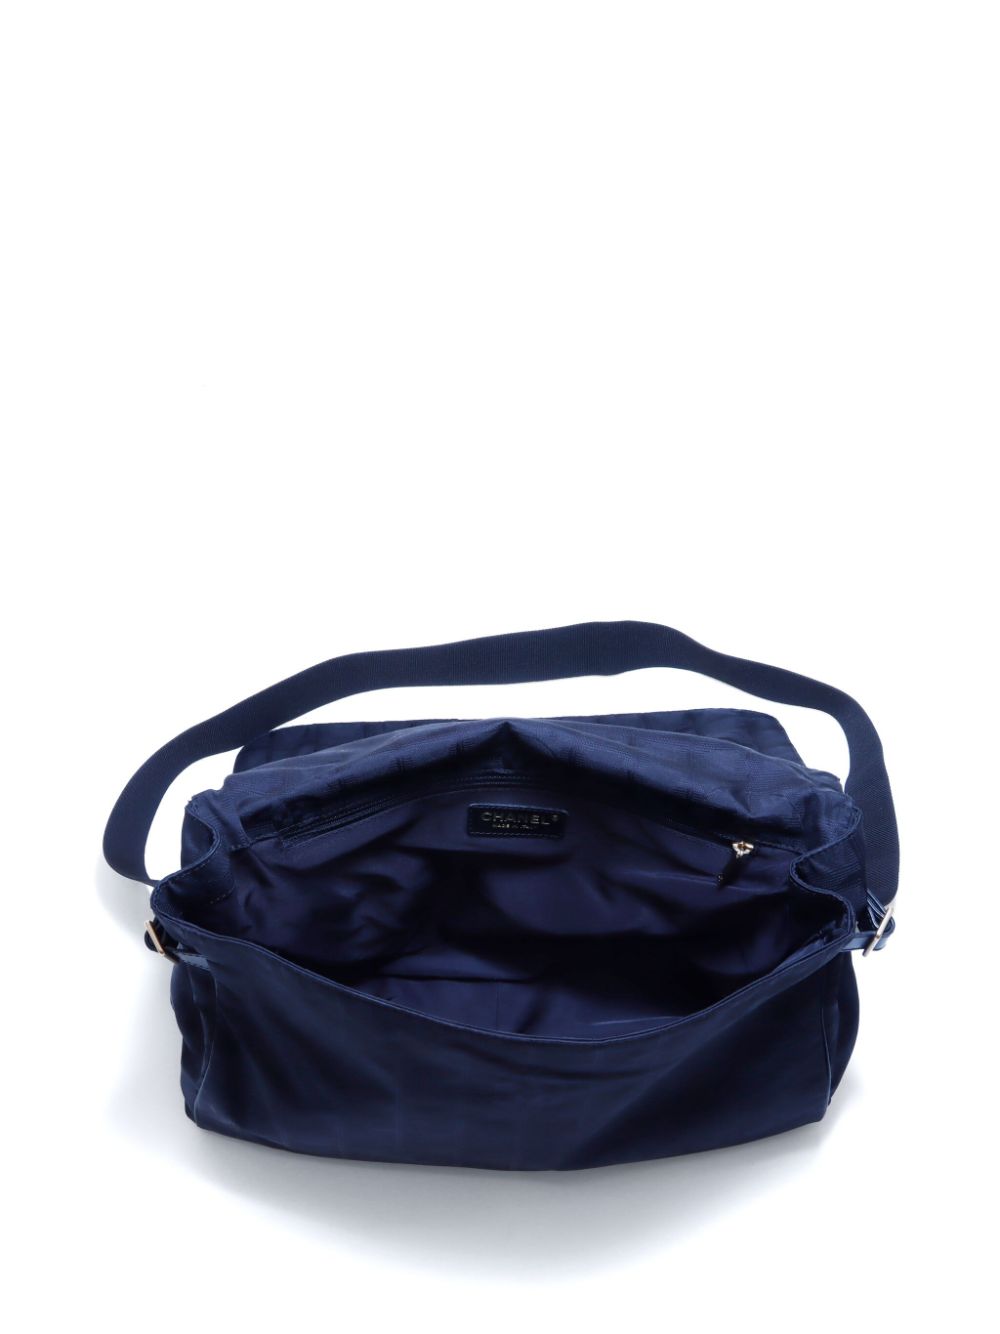 Pre-owned Chanel 2005-2006 Travel Line Shoulder Bag In Black